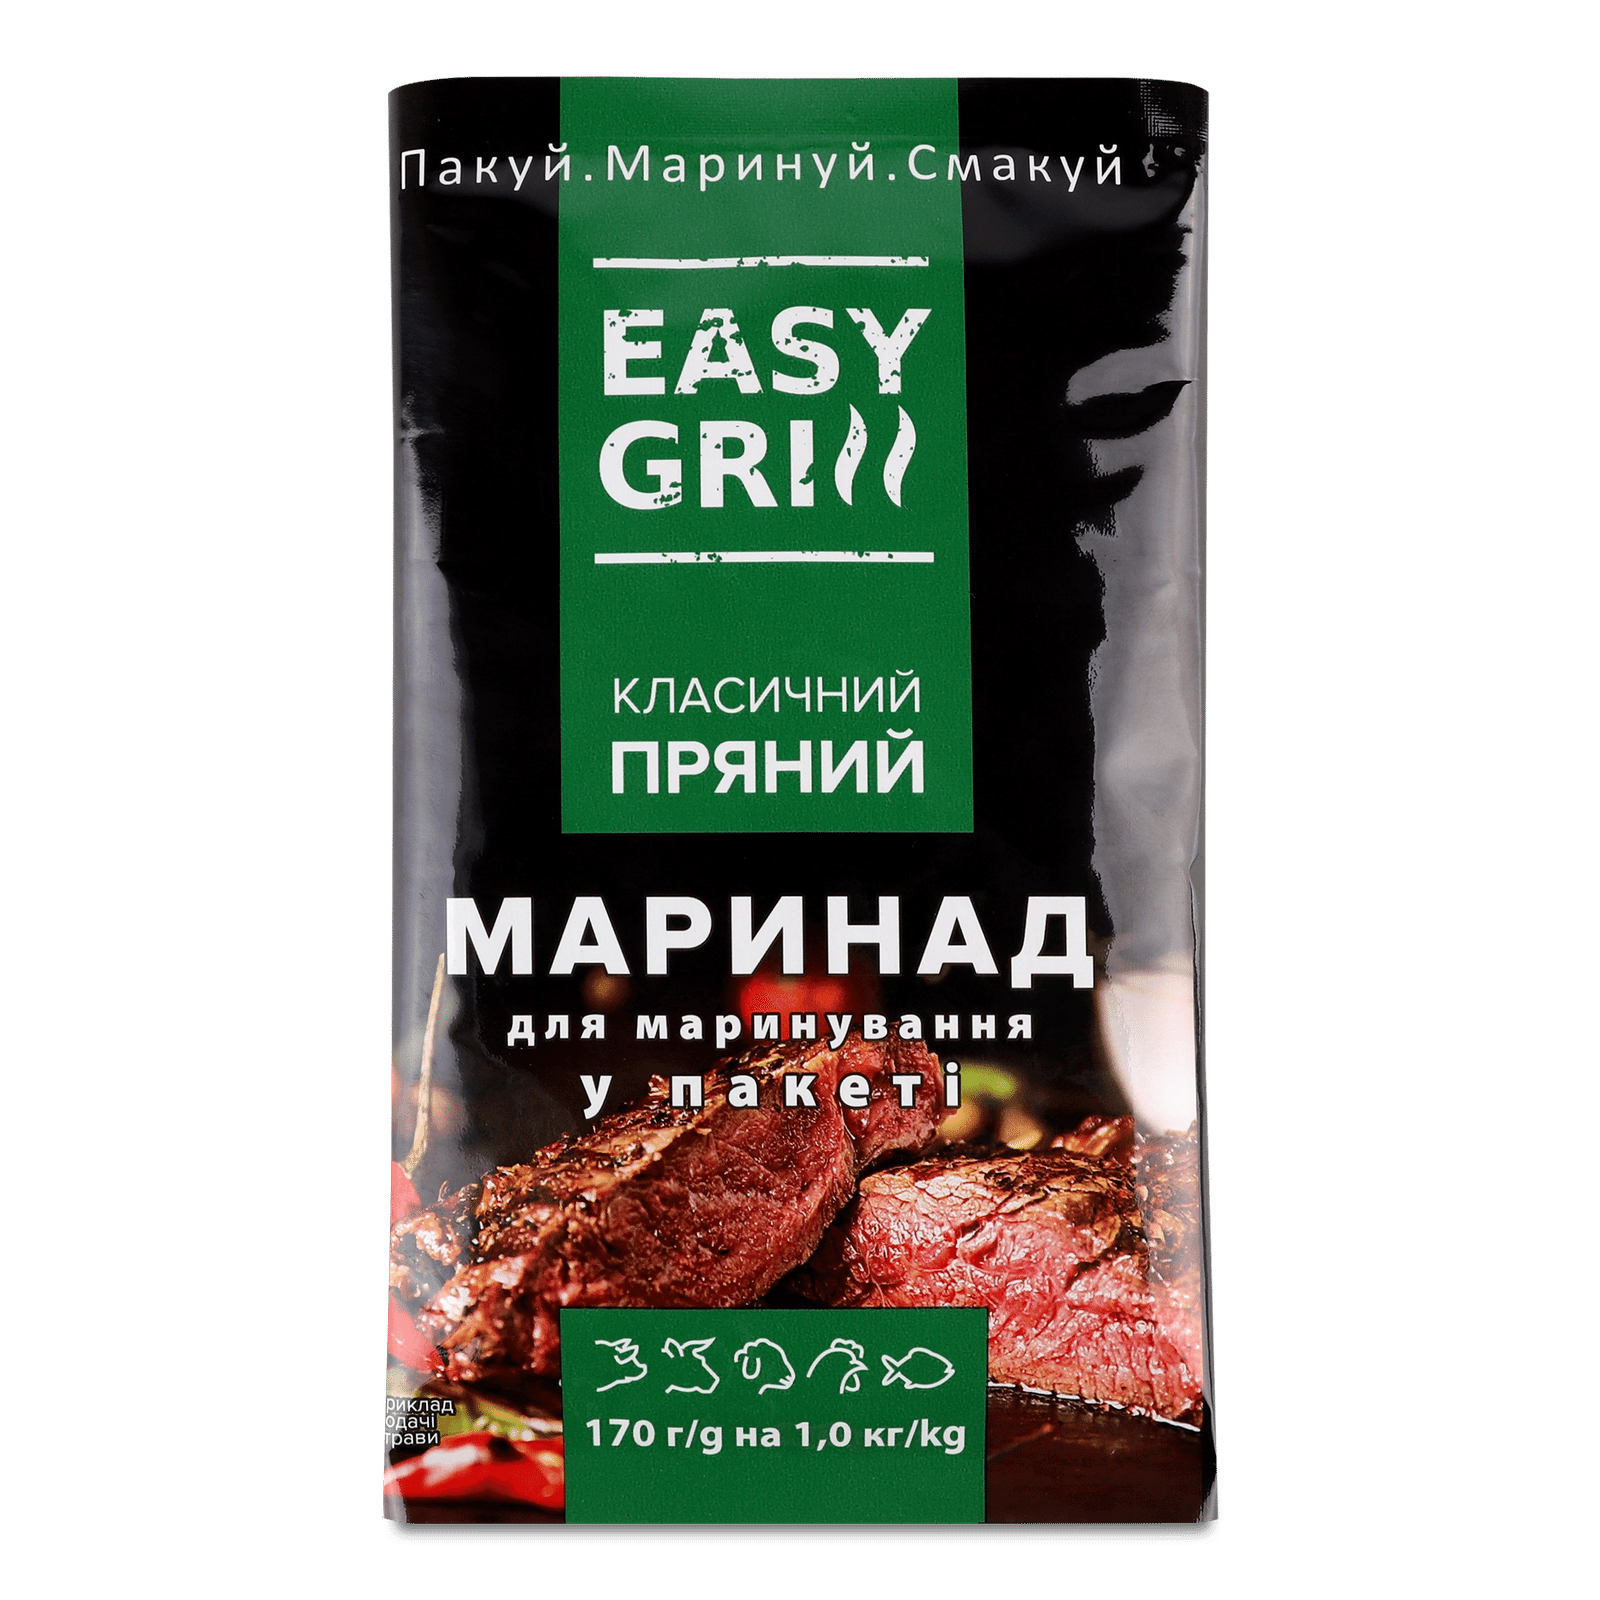 Маринад Easy grill «Класичний» пряний у пакеті - 1